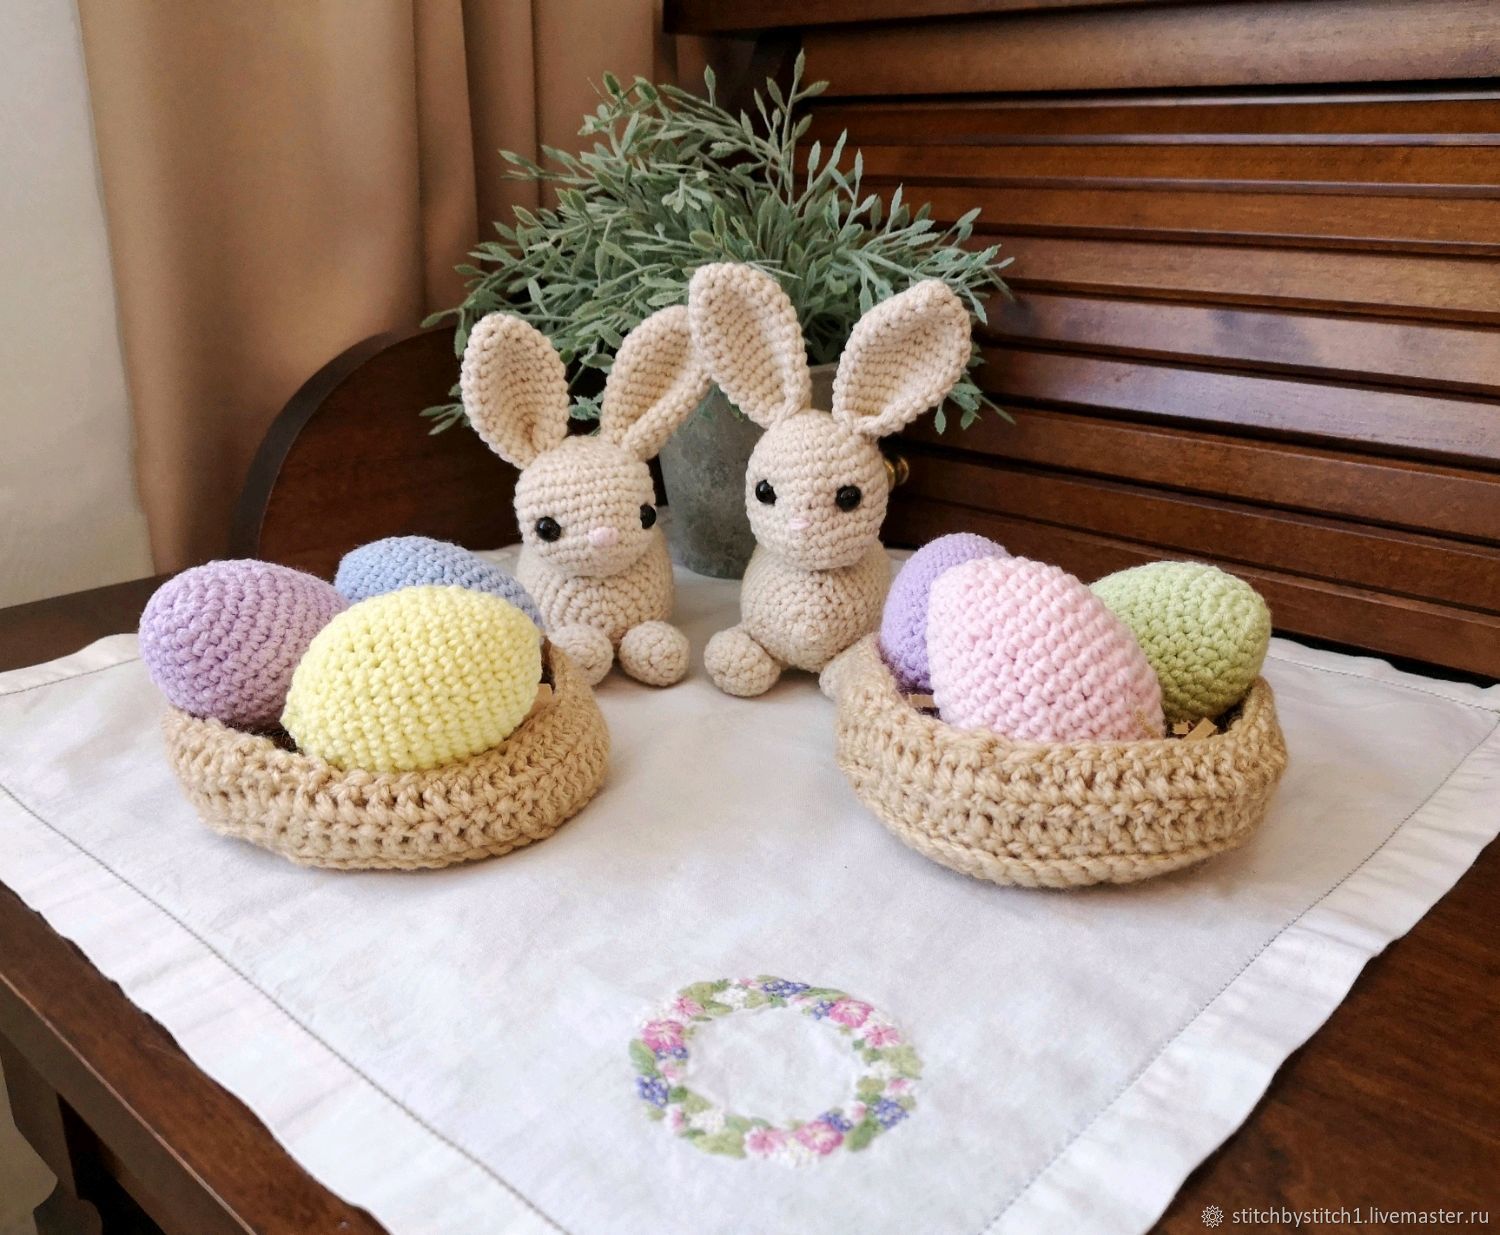 Купить подставку для яйца “Пасхальный кролик Анна” Bunny Tales 10 см. Артикул 